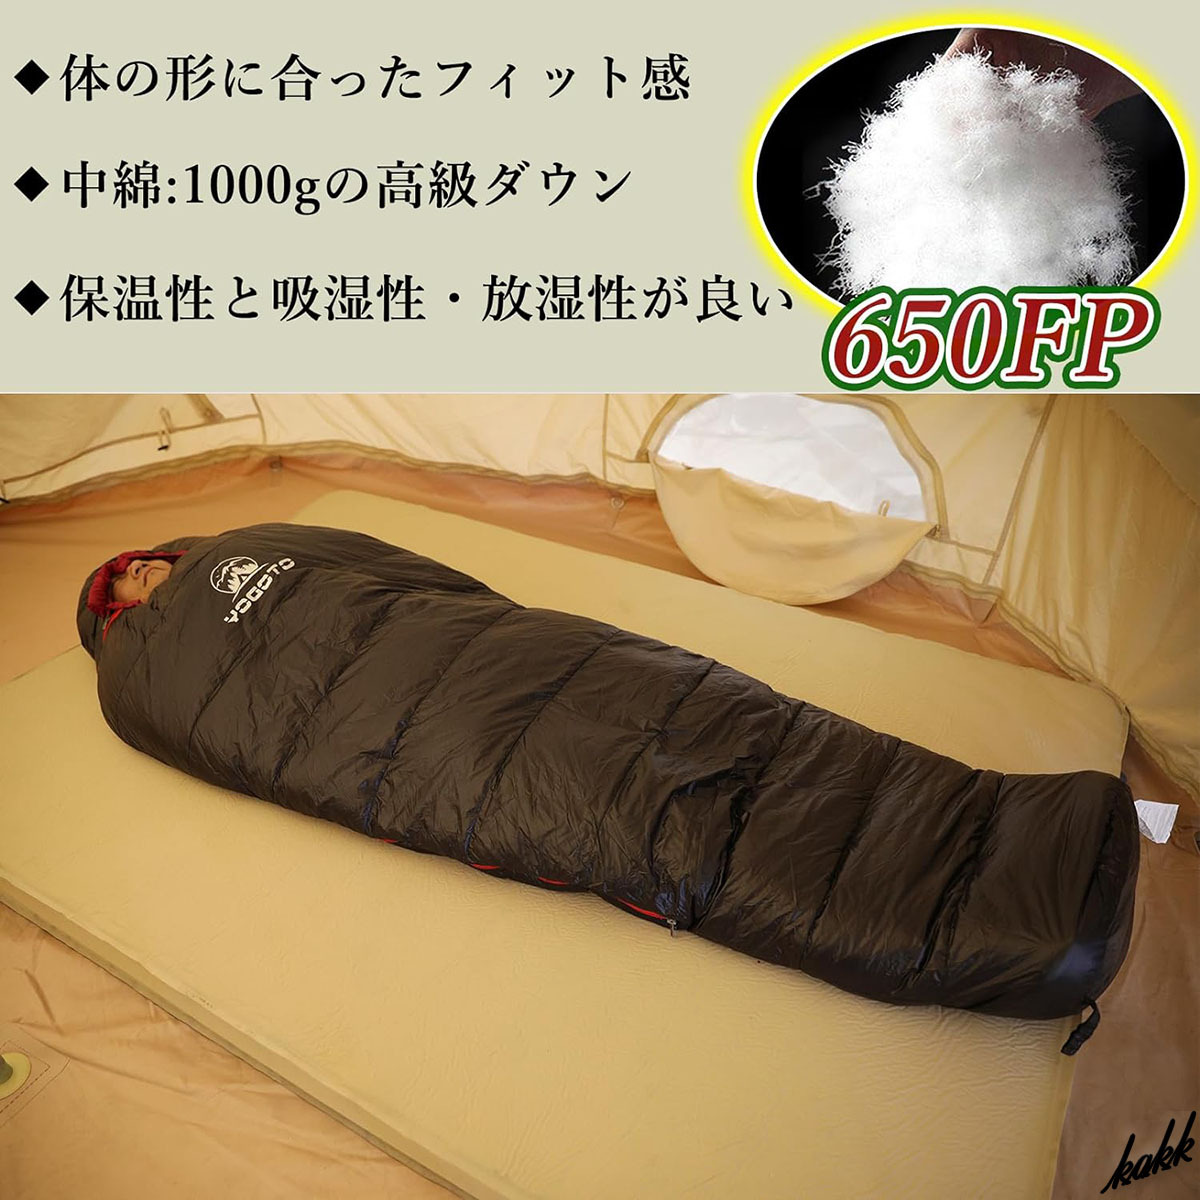 [. зонт . утро до .. делать ] мумия type спальный мешок 210×80cm down ткань водонепроницаемый compact место хранения кемпинг уличный предотвращение бедствий черный 